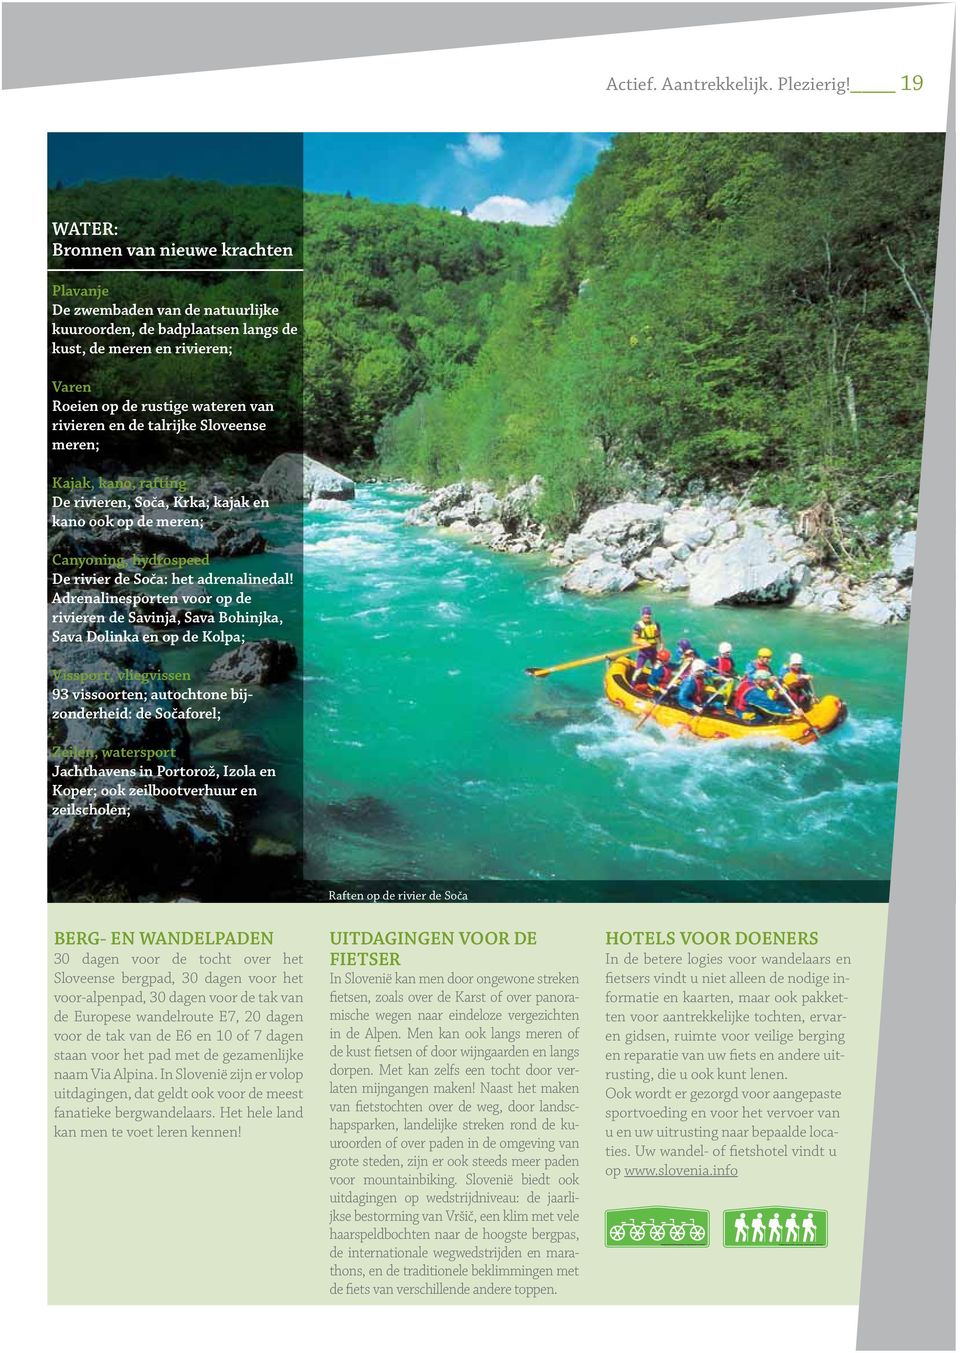 talrijke Sloveense meren; Kajak, kano, rafting De rivieren, Soča, Krka; kajak en kano ook op de meren; Canyoning, hydrospeed De rivier de Soča: het adrenalinedal!